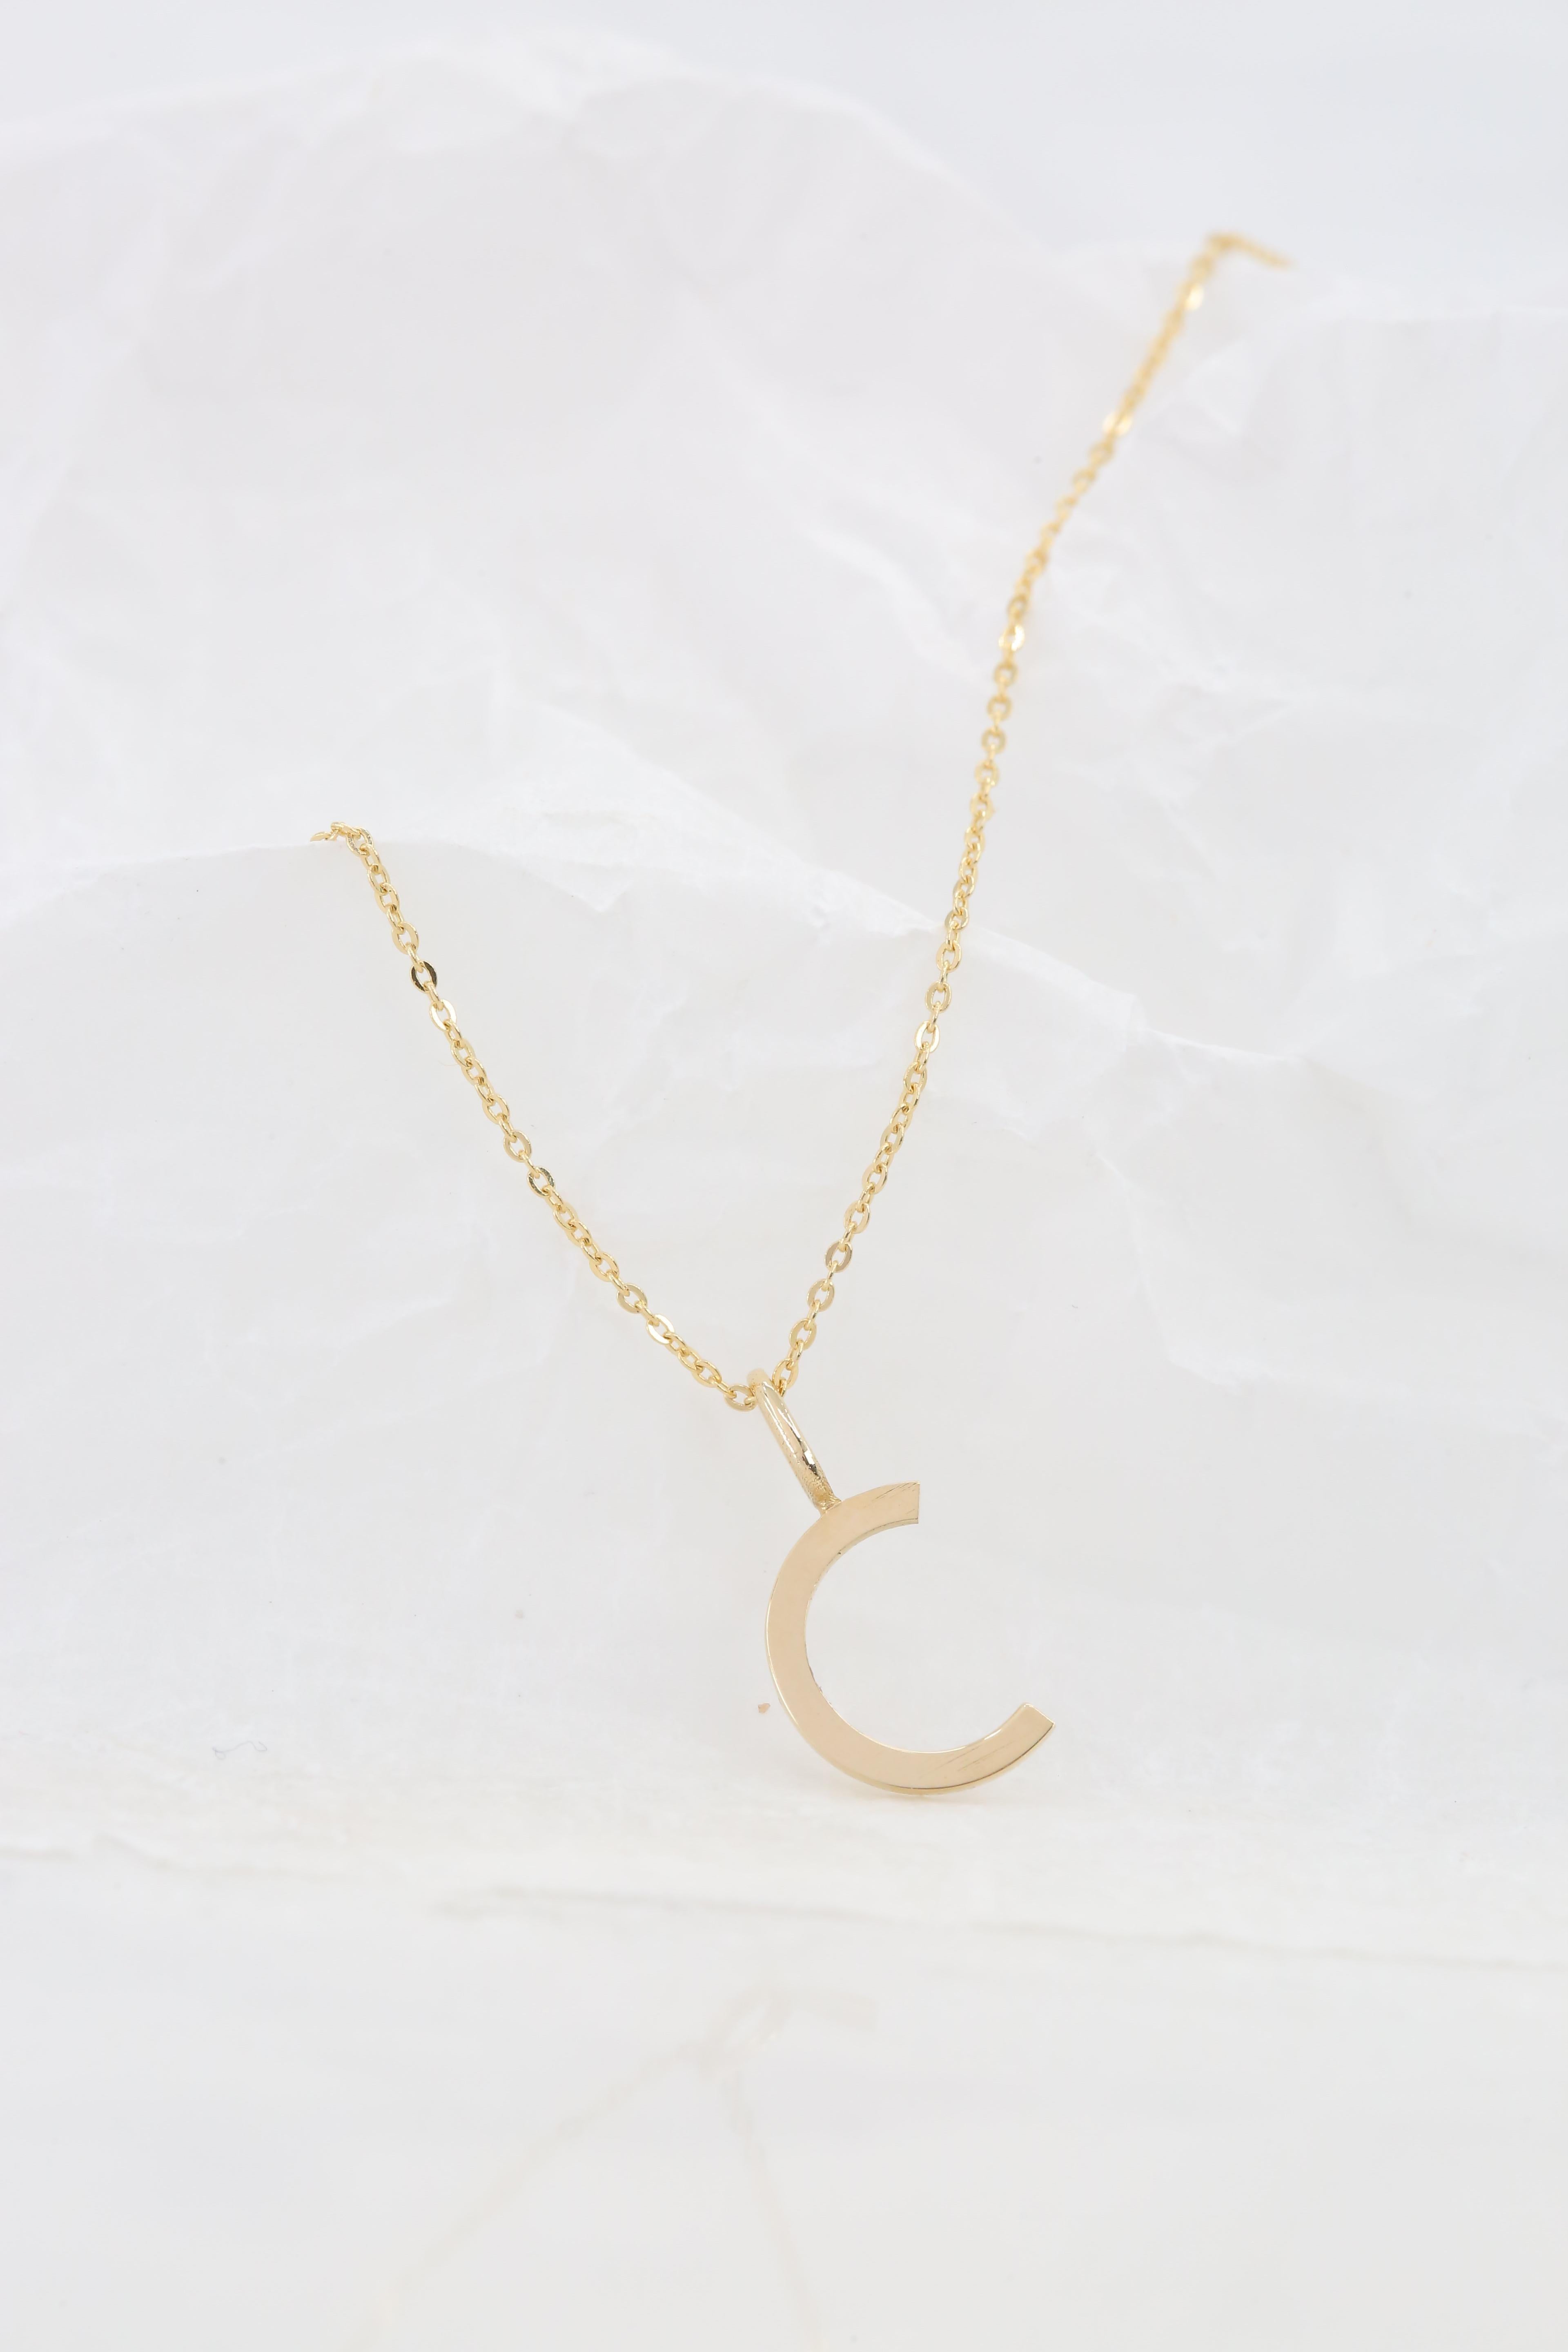 14k Gold Halsketten, Buchstaben Halskette Modelle, Buchstabe C Gold Halskette-Gift Halskette für Damen oder Herren im Angebot